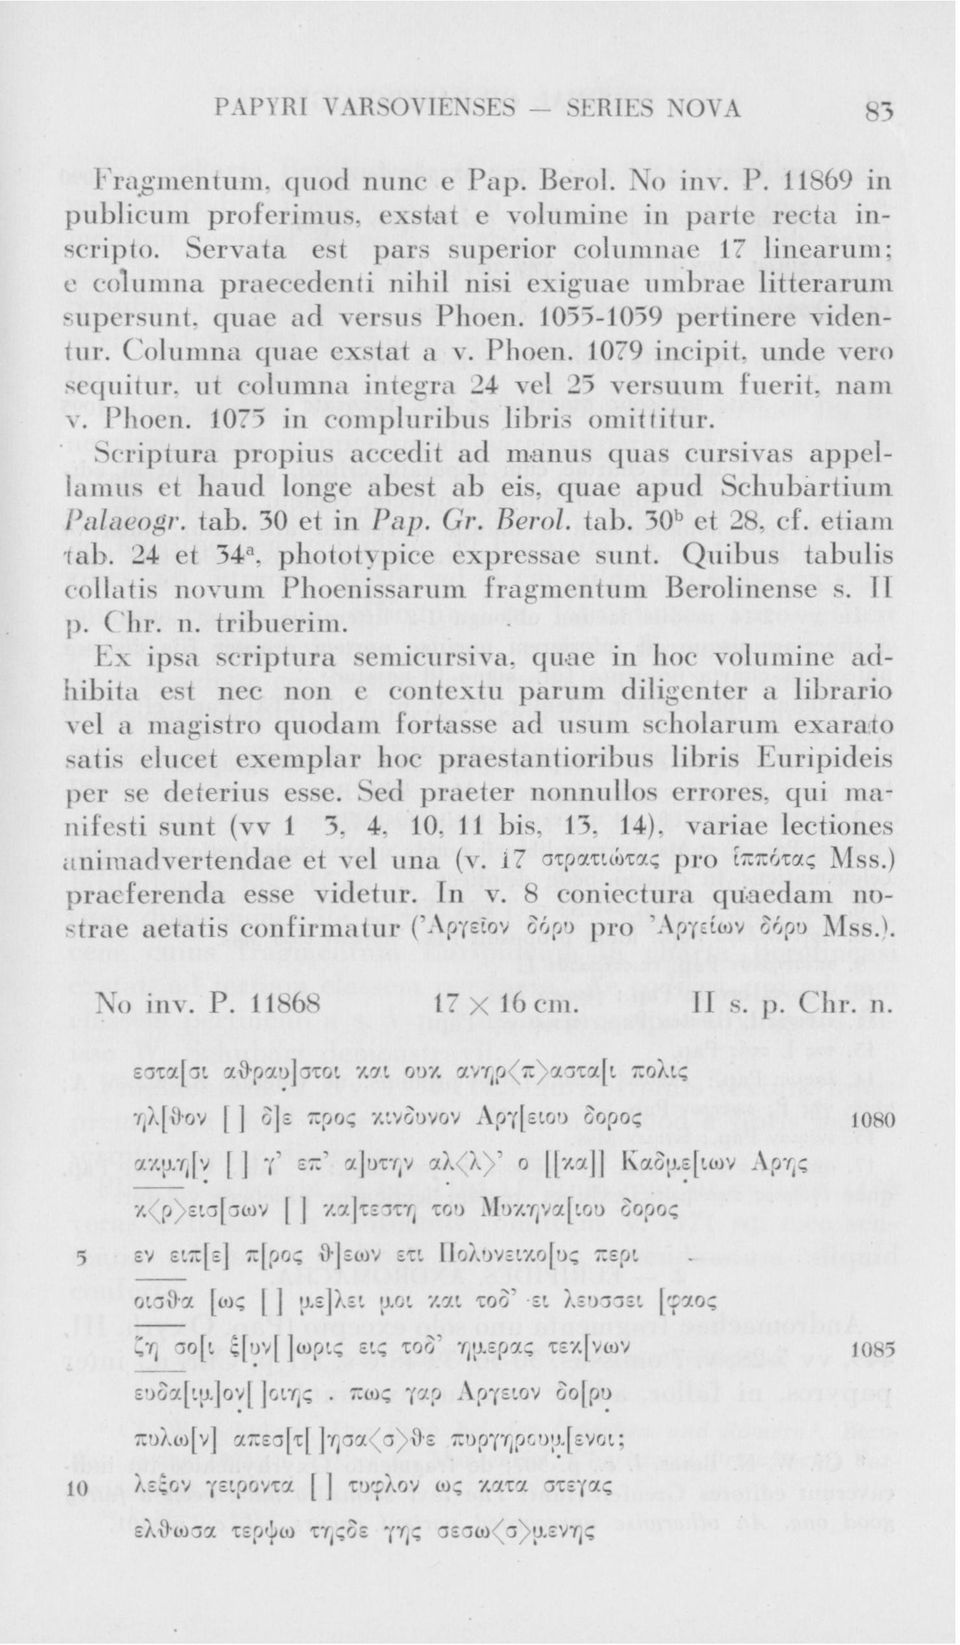 Phoen. 1079 incipit. unde vero sequitur. ut columna intégra 24 vel 25 versuum fuerit, nam v. Phoen. 1075 in compluribus libris omiťtiťur.